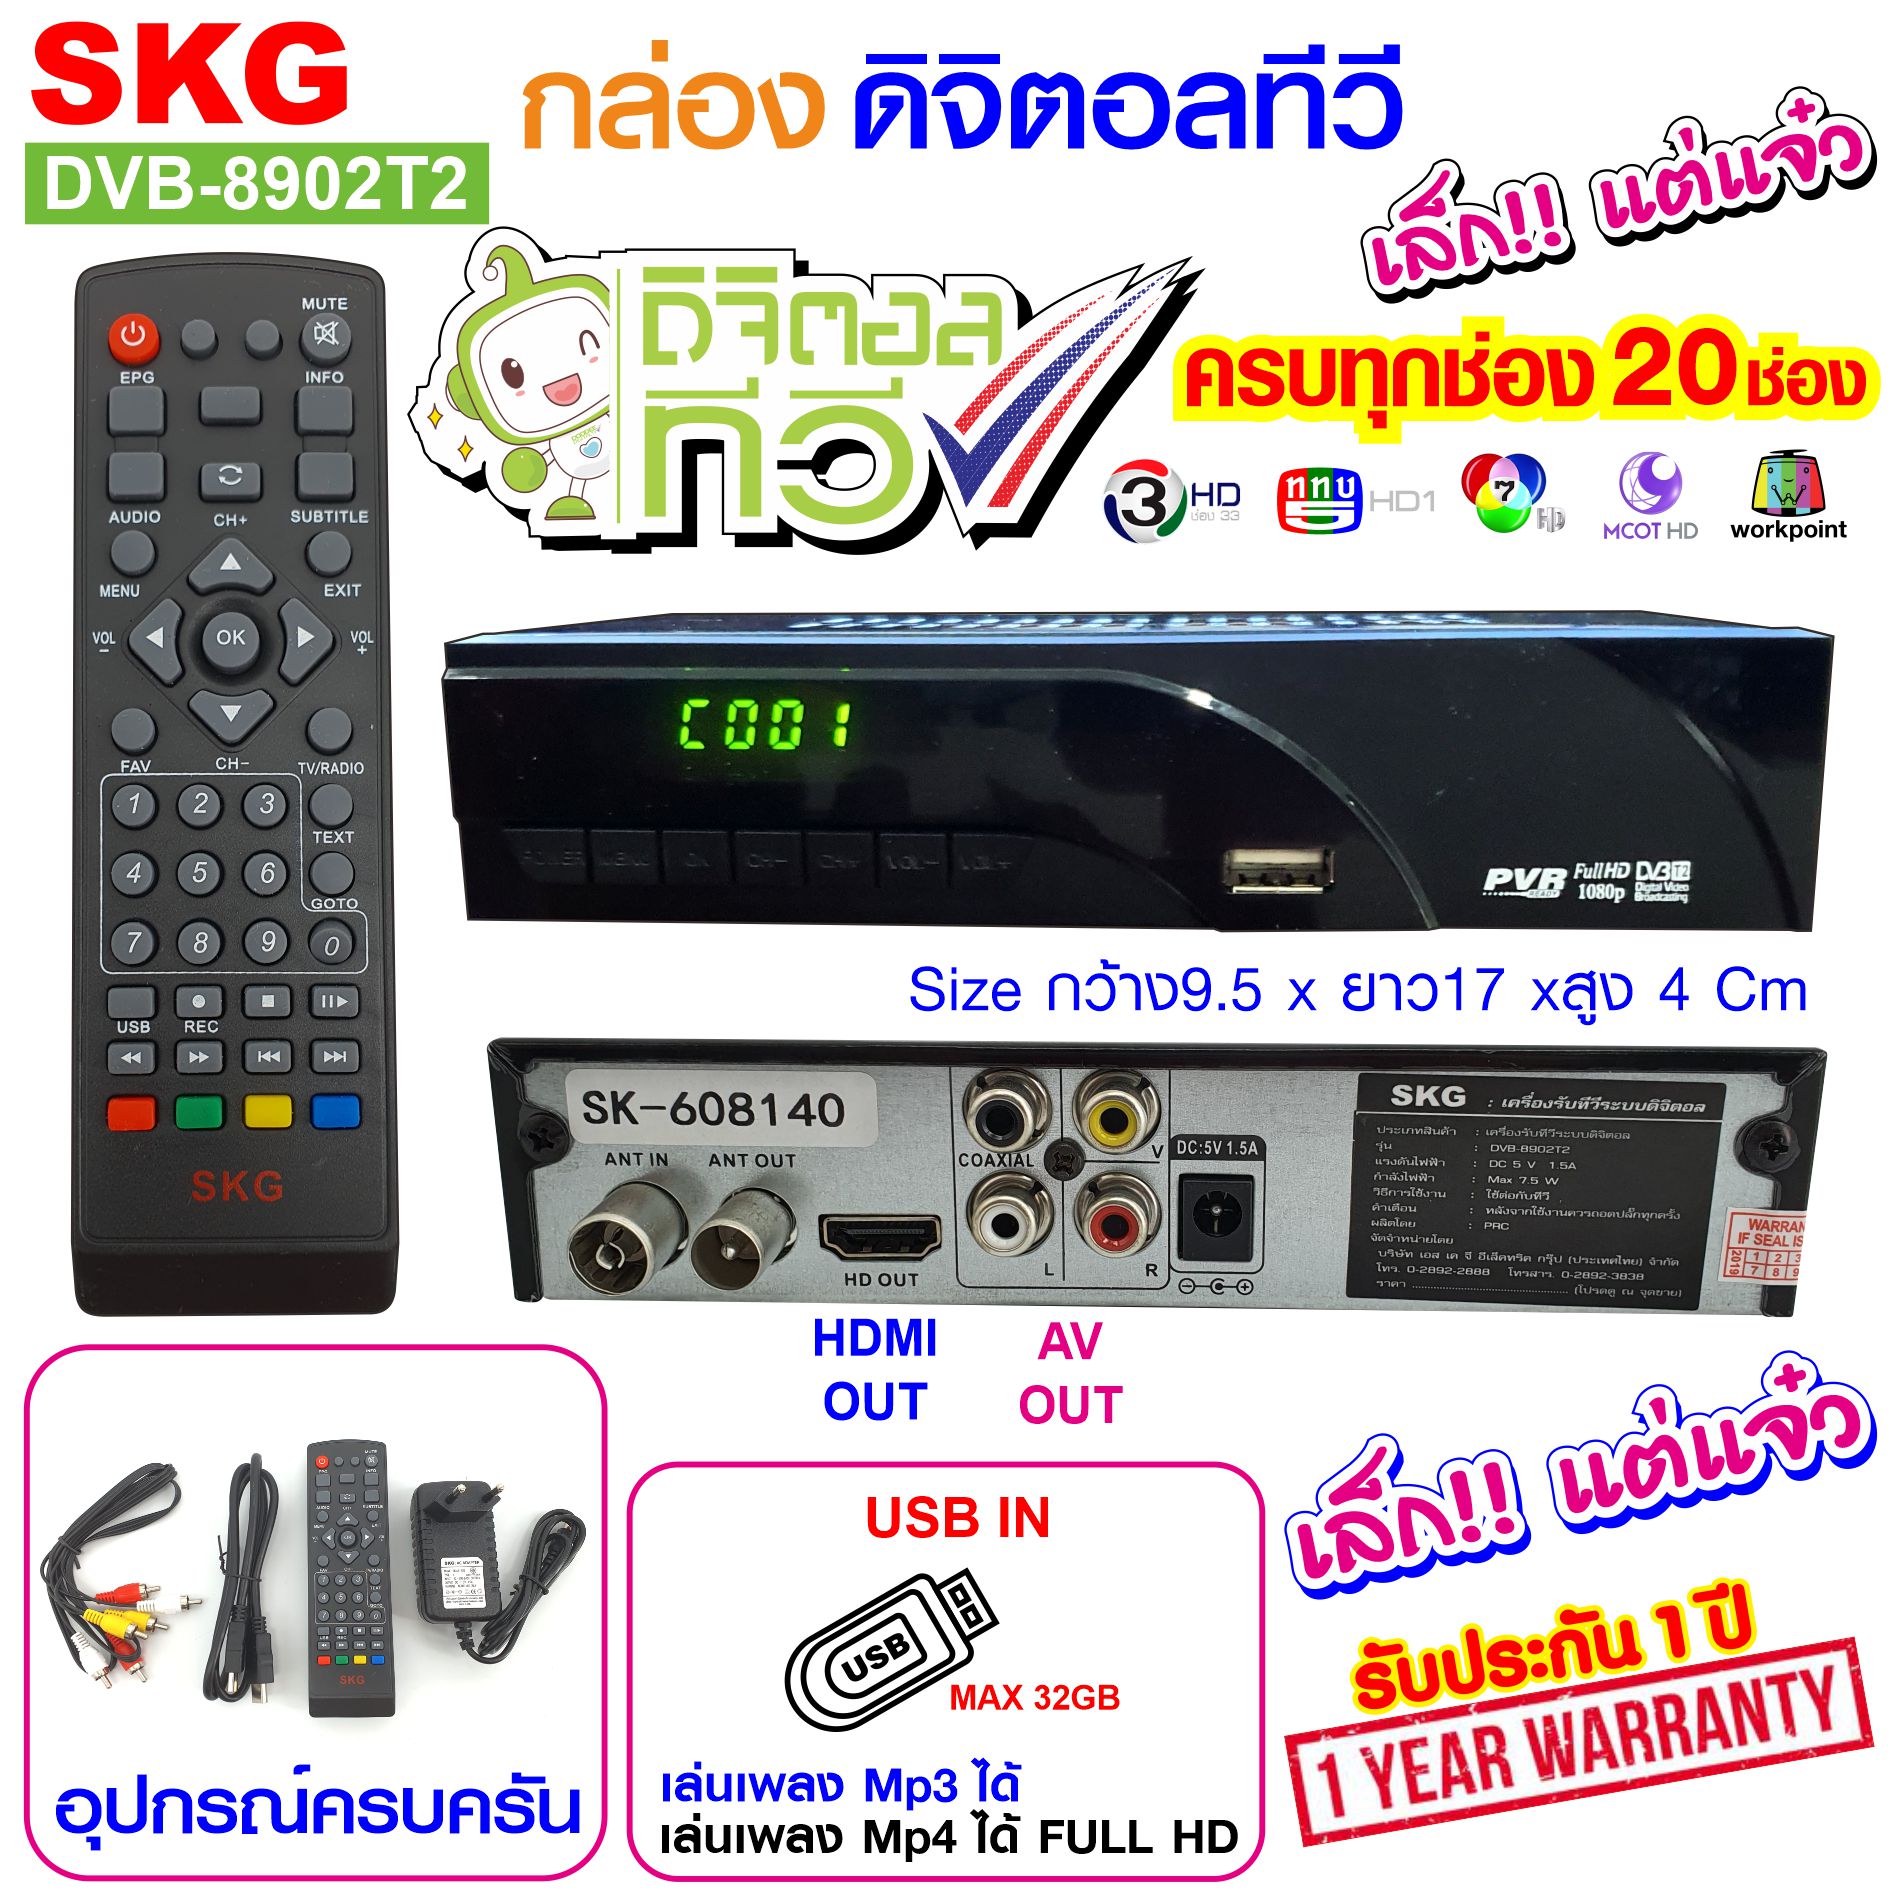 SKG กล่องดิจิตอลทีวี ขนาดเล็ก รุ่น DVB-8902T2 สีดำ